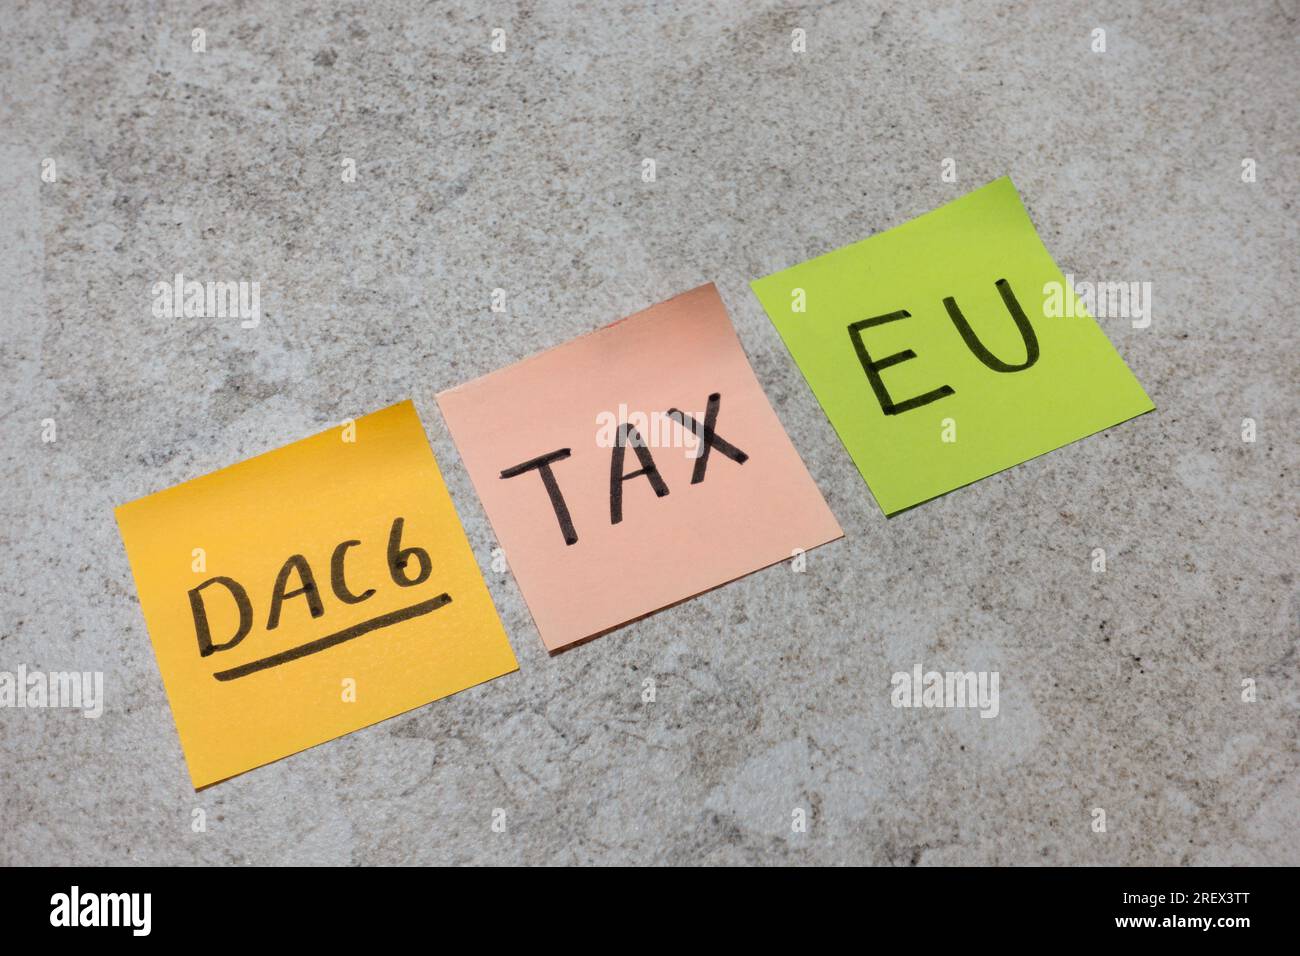 DAC6 (DAC 6), verfasst auf Haftnotiz für die EU-Richtlinie über grenzüberschreitende Steuerregelungen für den Informationsaustausch zur Verhinderung von Steuerhinterziehung Stockfoto